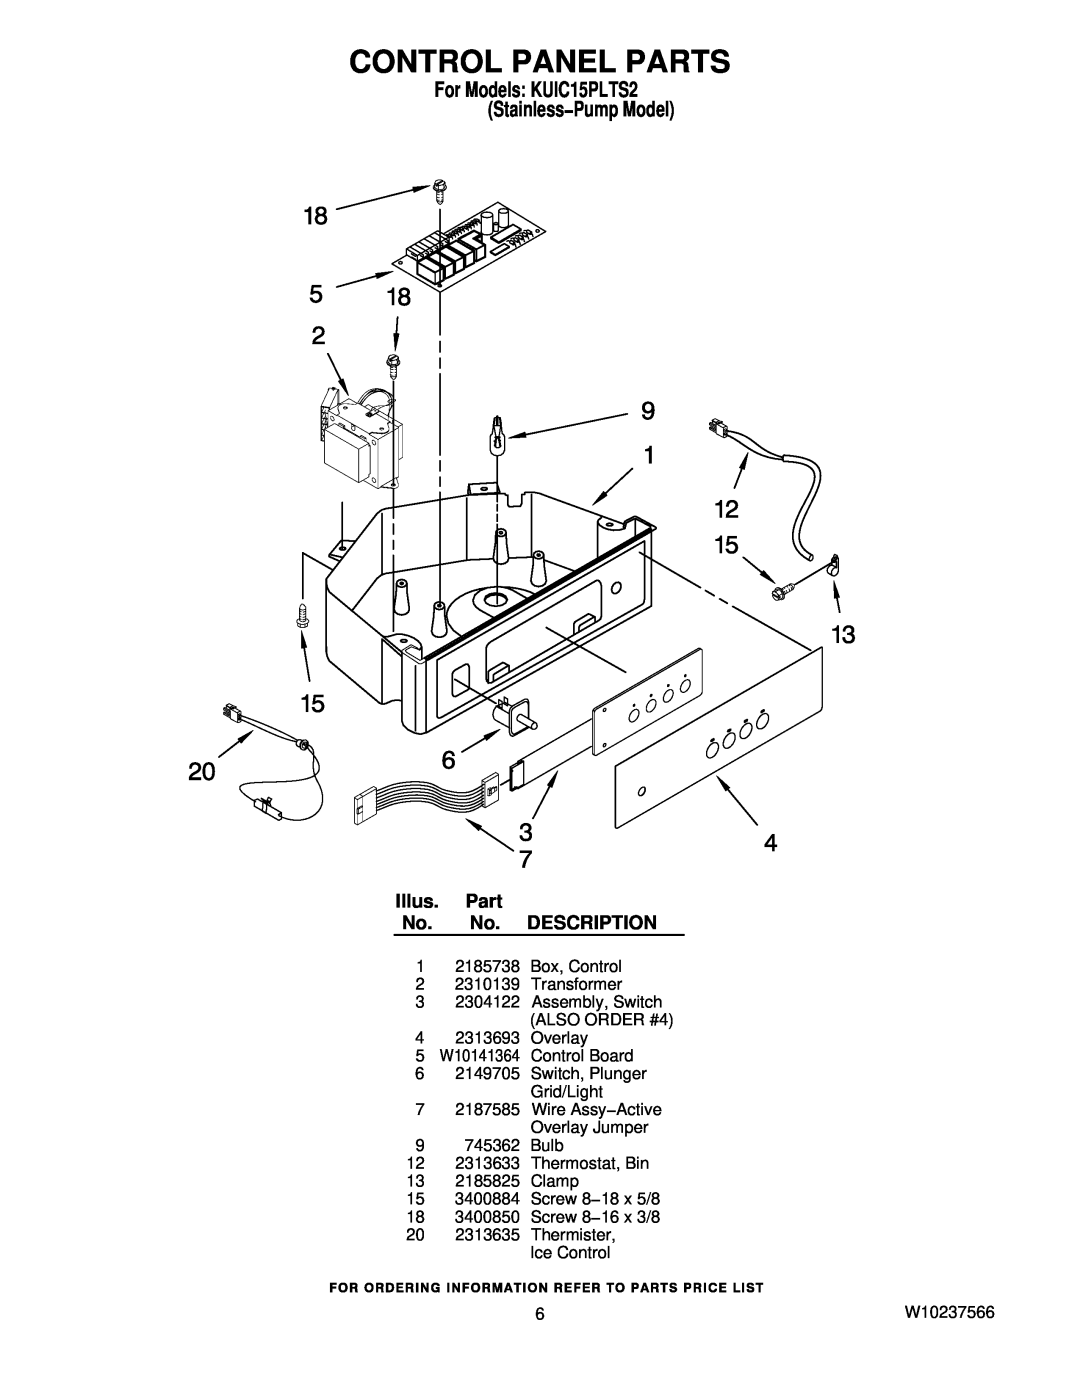 KitchenAid manual Control Panel Parts, For Models KUIC15PLTS2 Stainless−Pump Model, Illus. Part No. No. DESCRIPTION 